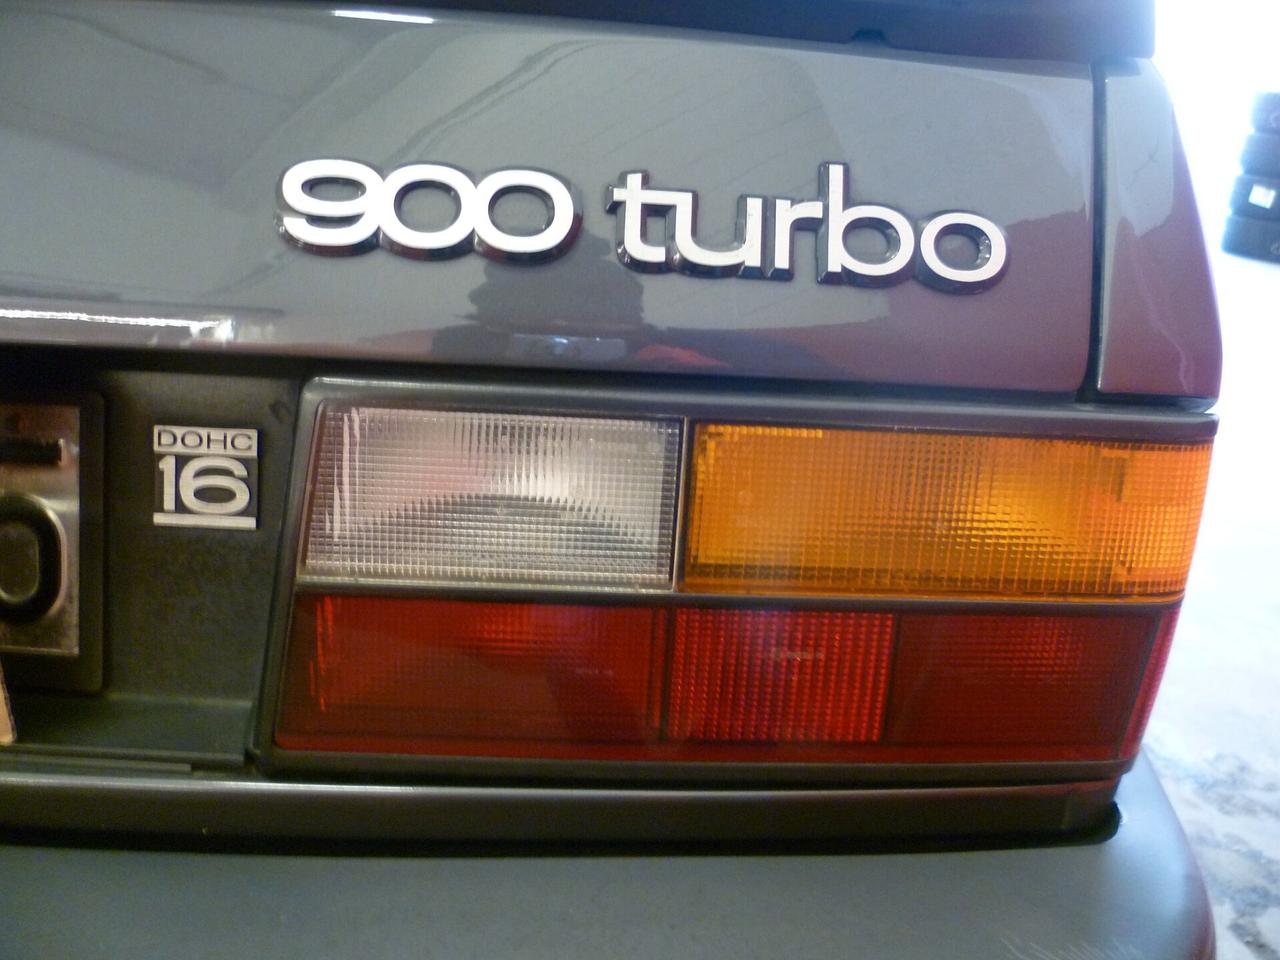 Saab 900 i turbo 4 porte perfetta clima